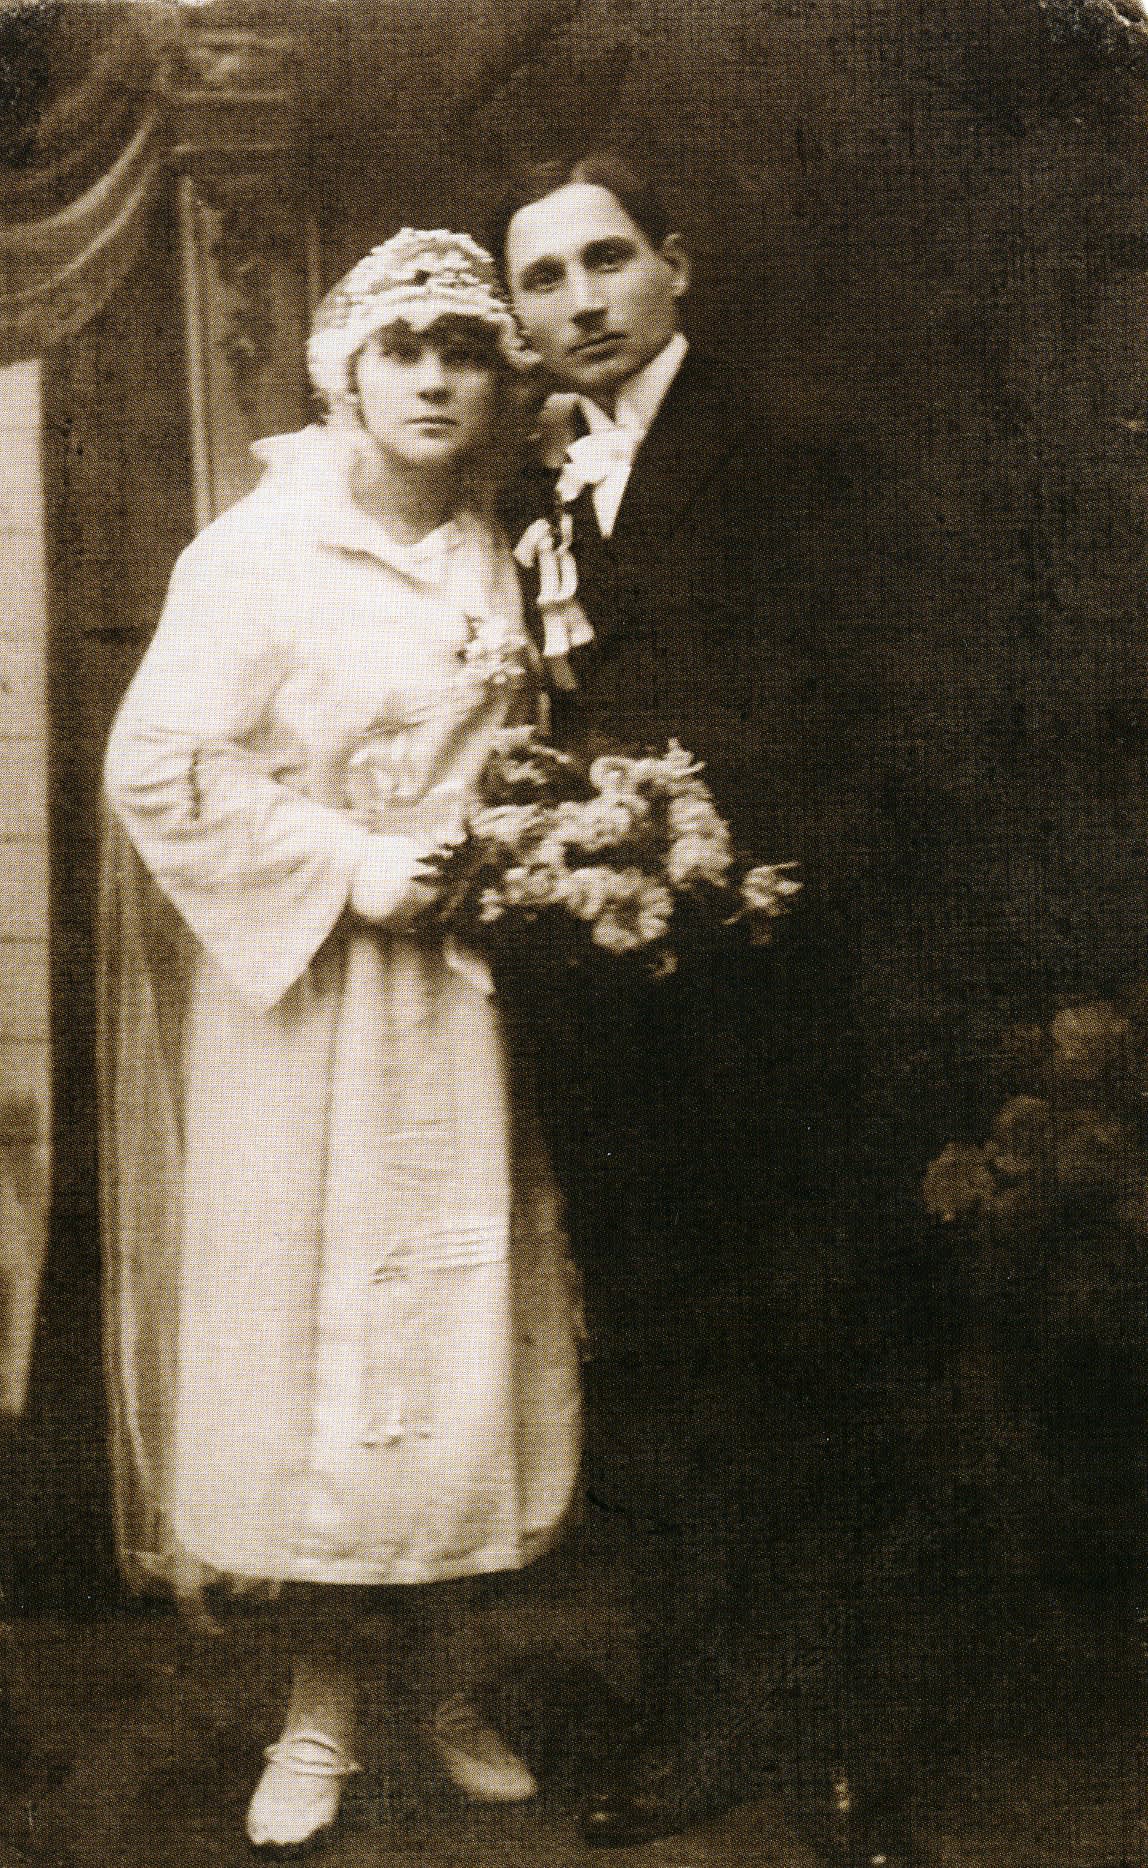 Kurpiel Franciszka and Stanislaw